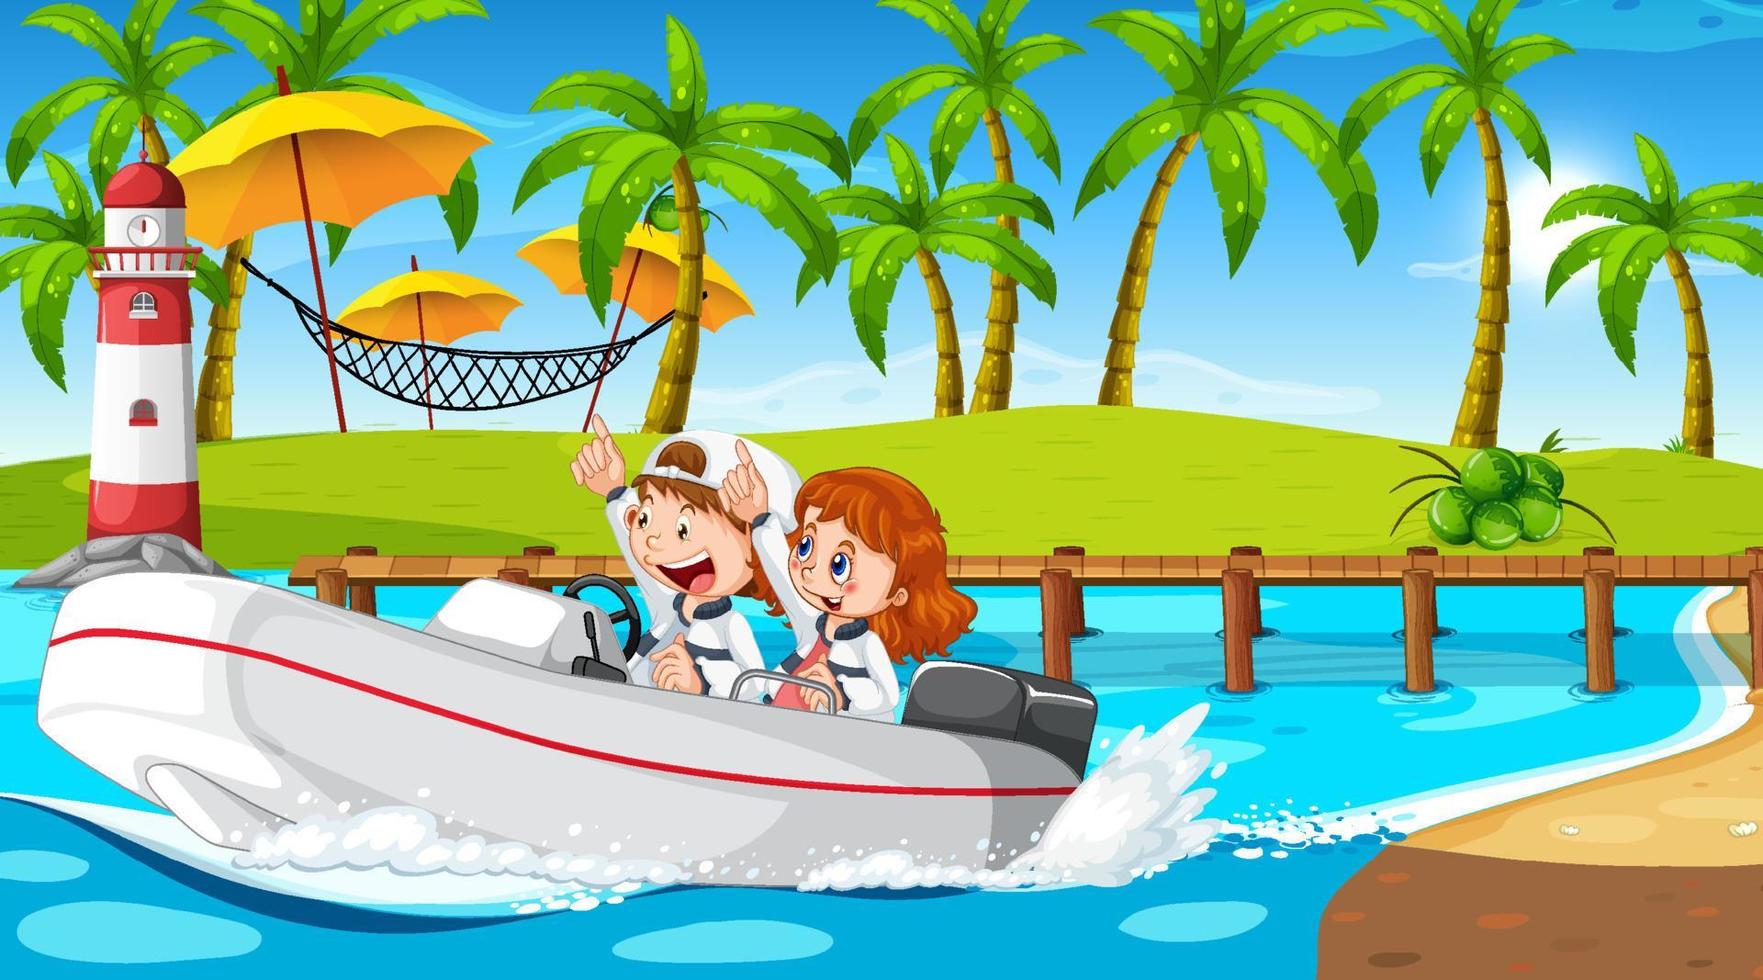 oceaanlandschap met kinderen die speedboot besturen vector